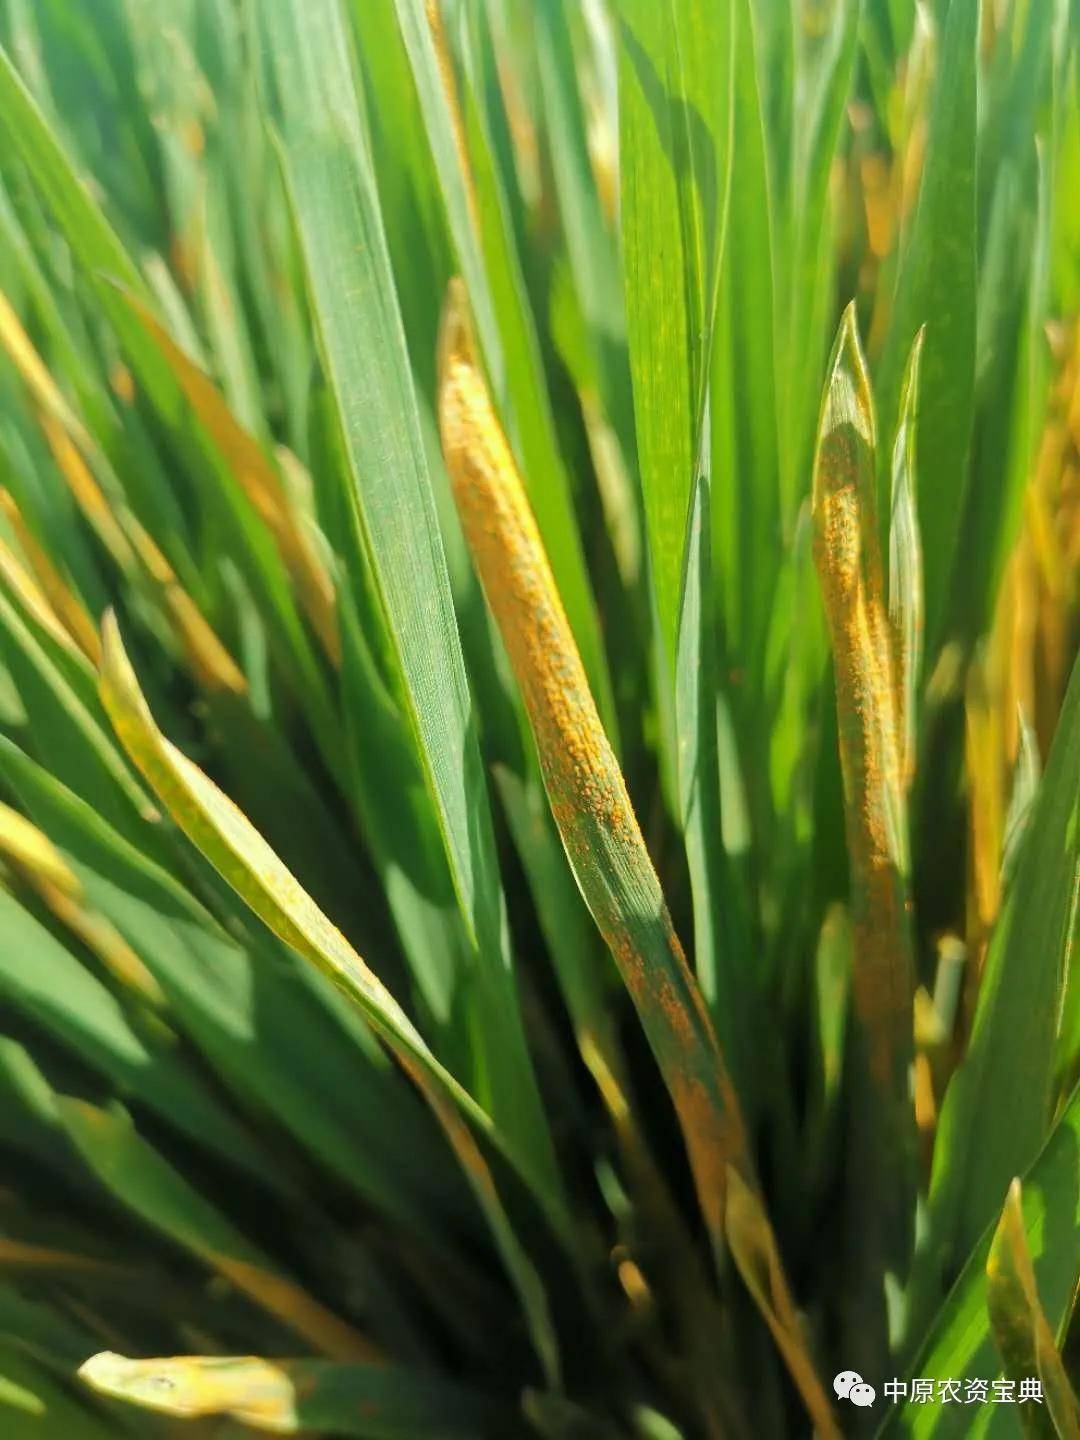 小麦接近成熟时,在叶鞘和叶片背面形成短线条状较扁平的黑褐色冬孢子